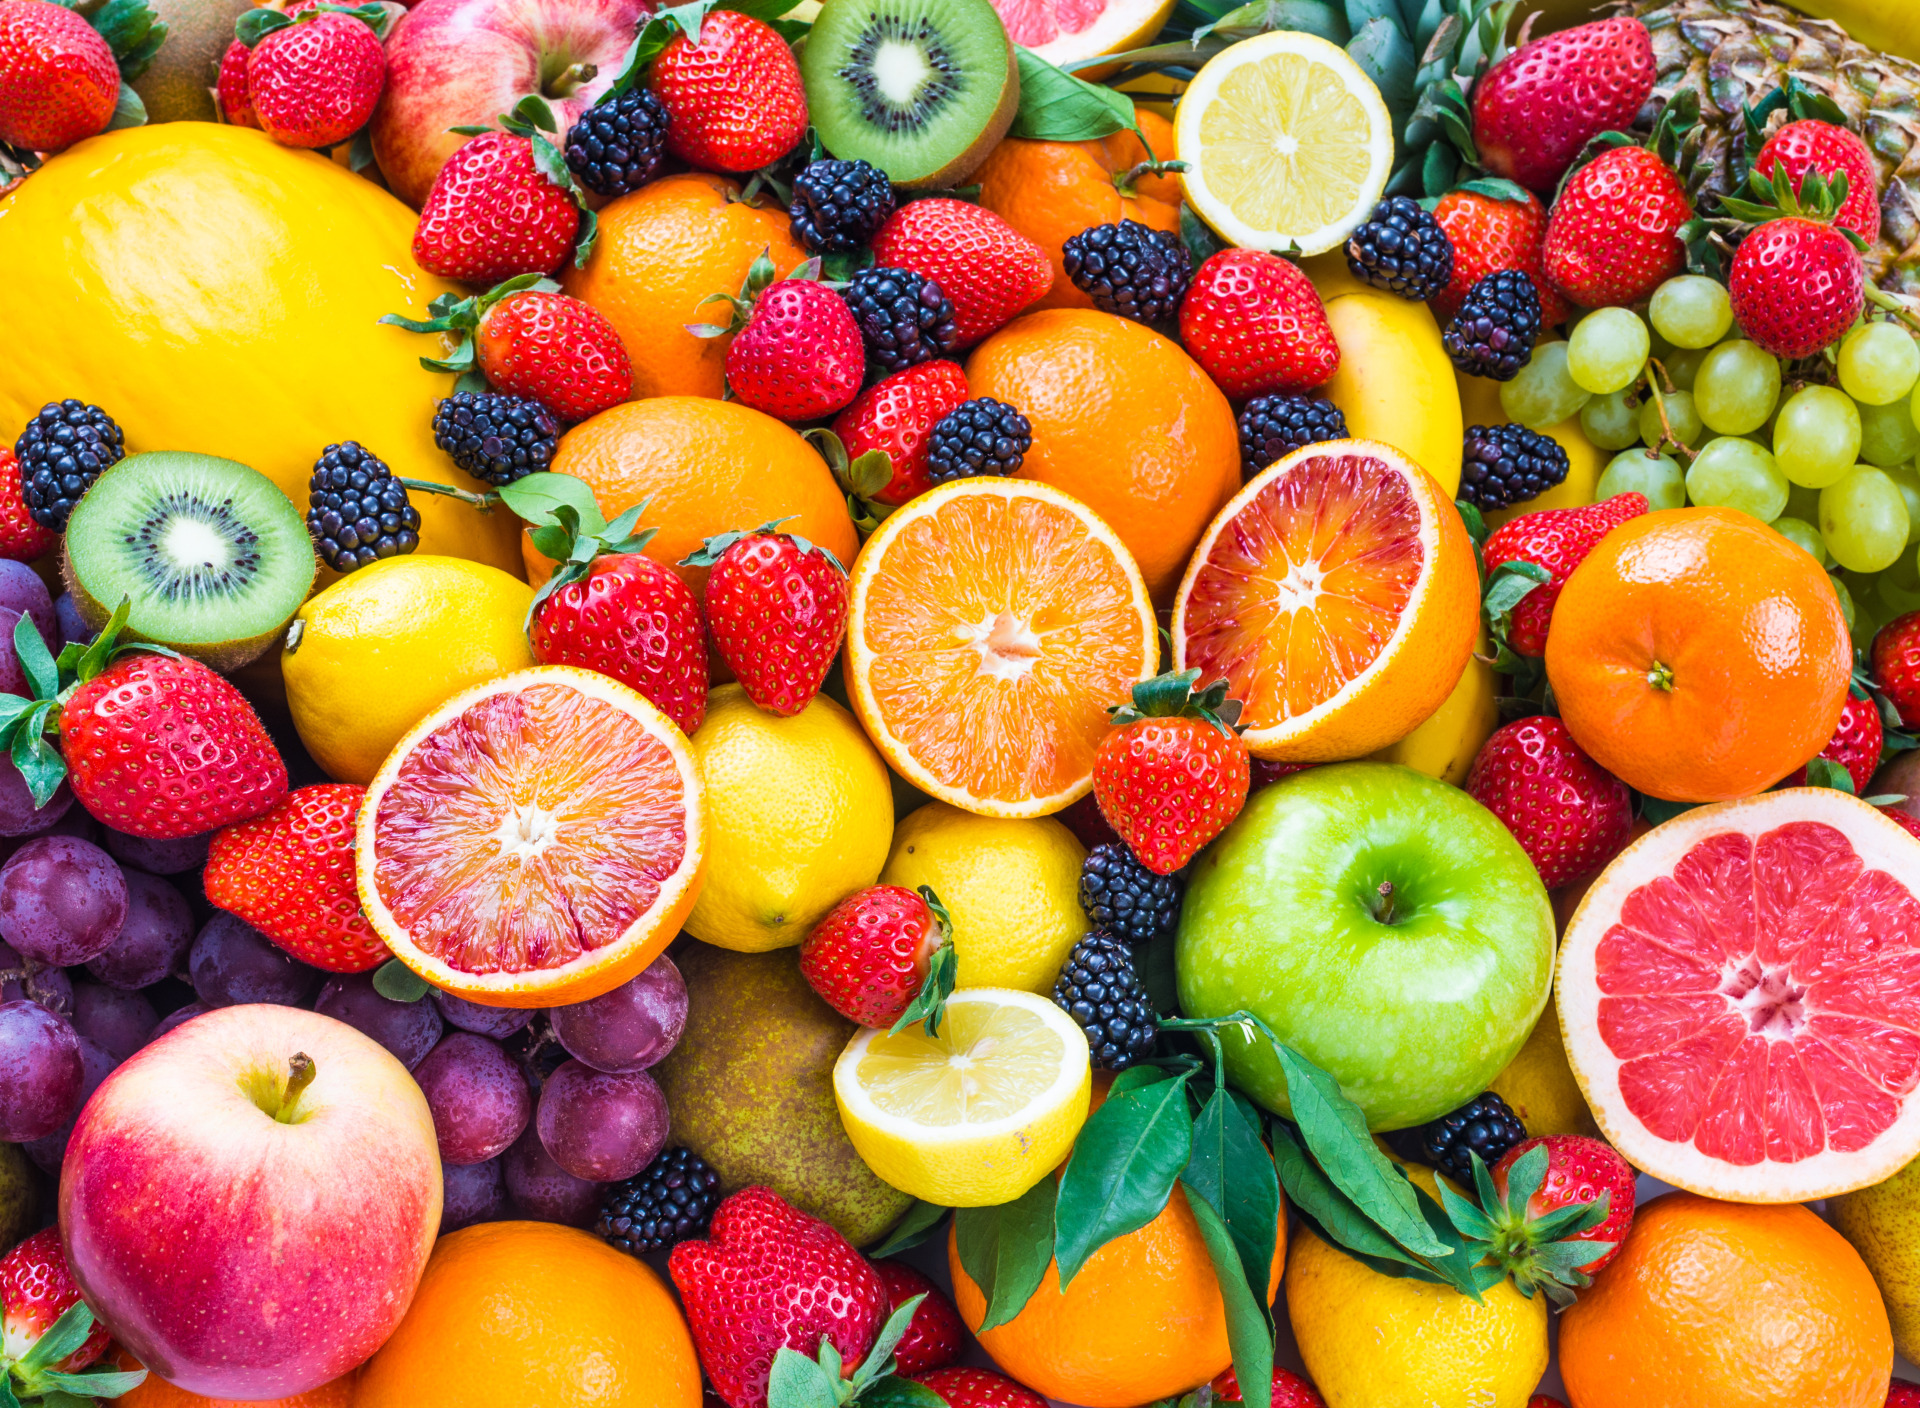 Fruit kinds. Фрукты. Овощи, фрукты, ягоды. Фрукты фон. Фон с фруктами и ягодами.